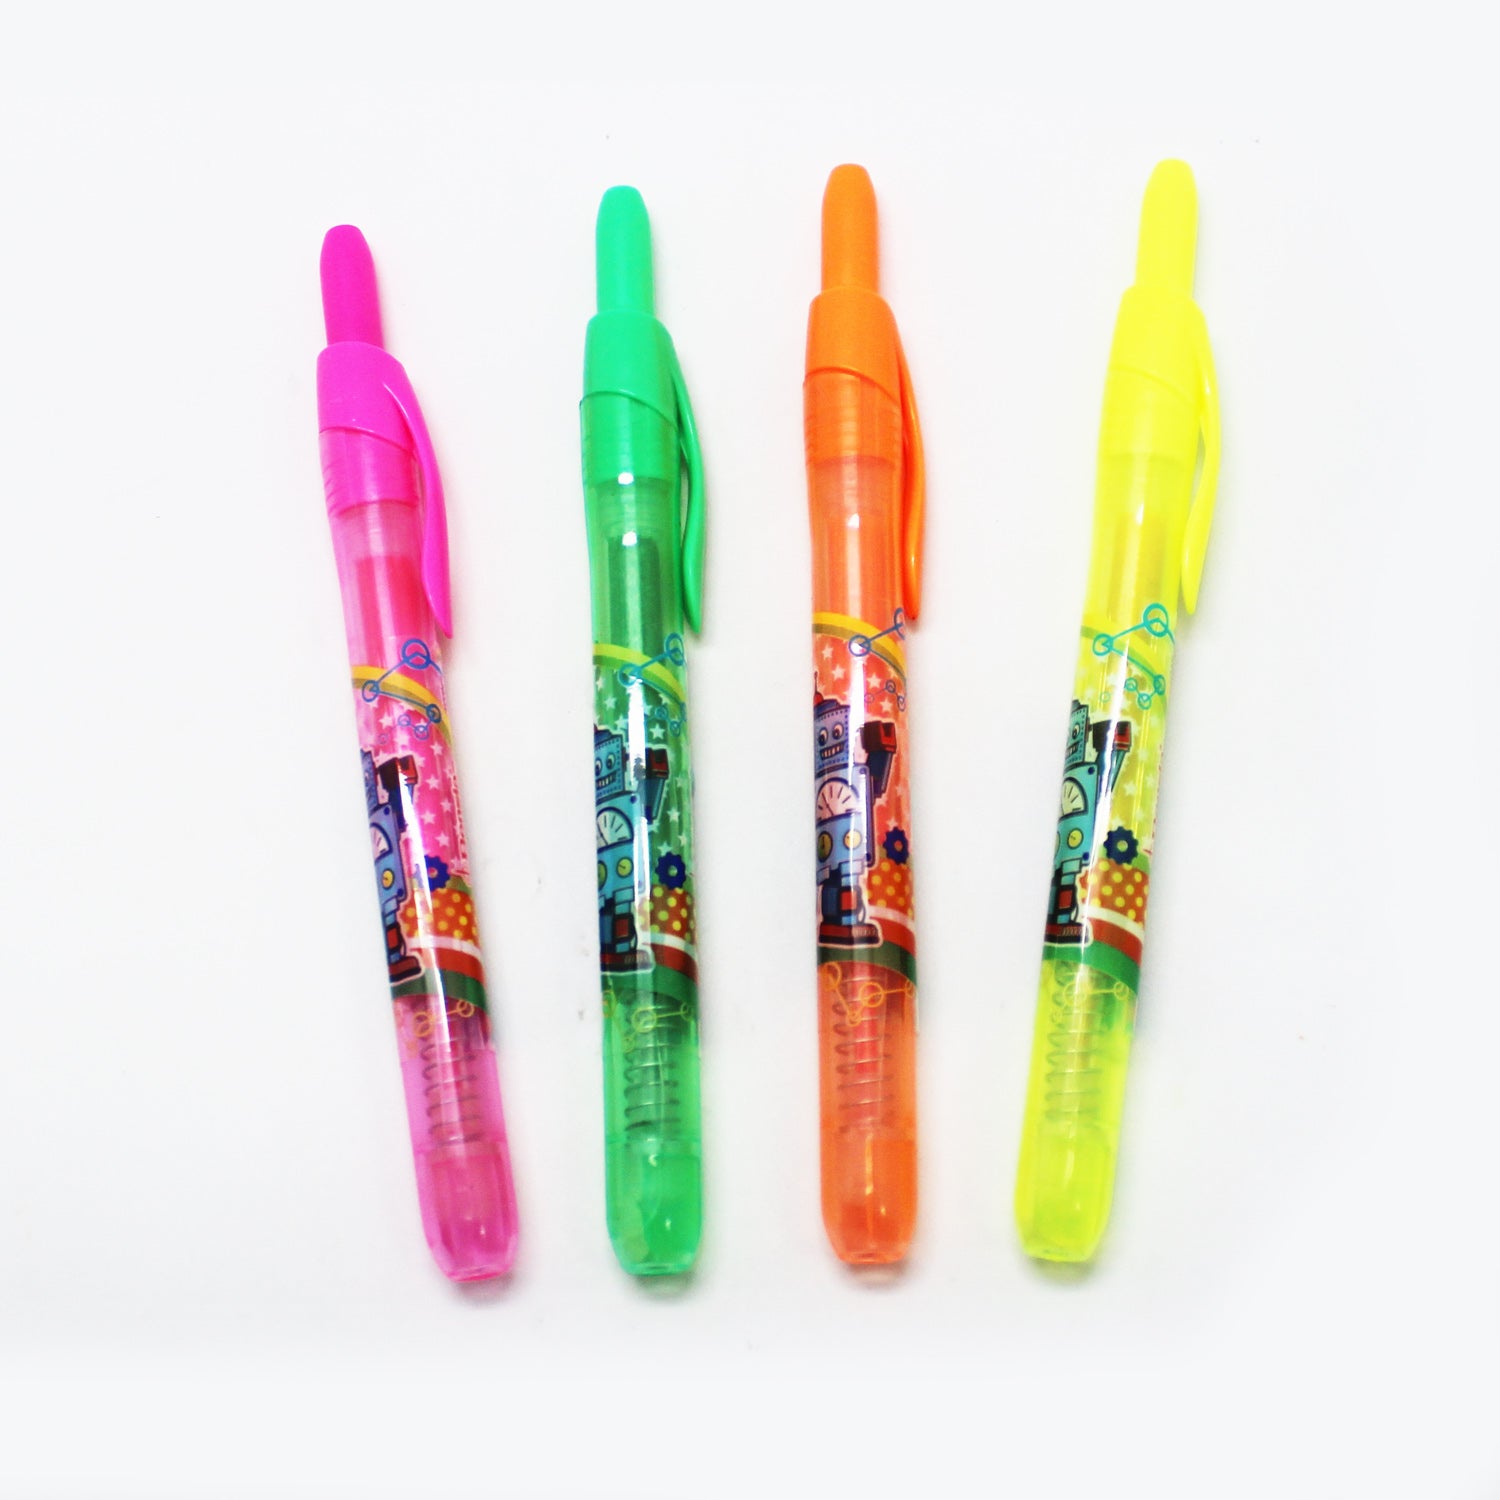 XYNO14 Water Base Pen Highlighter Pen – Bensia